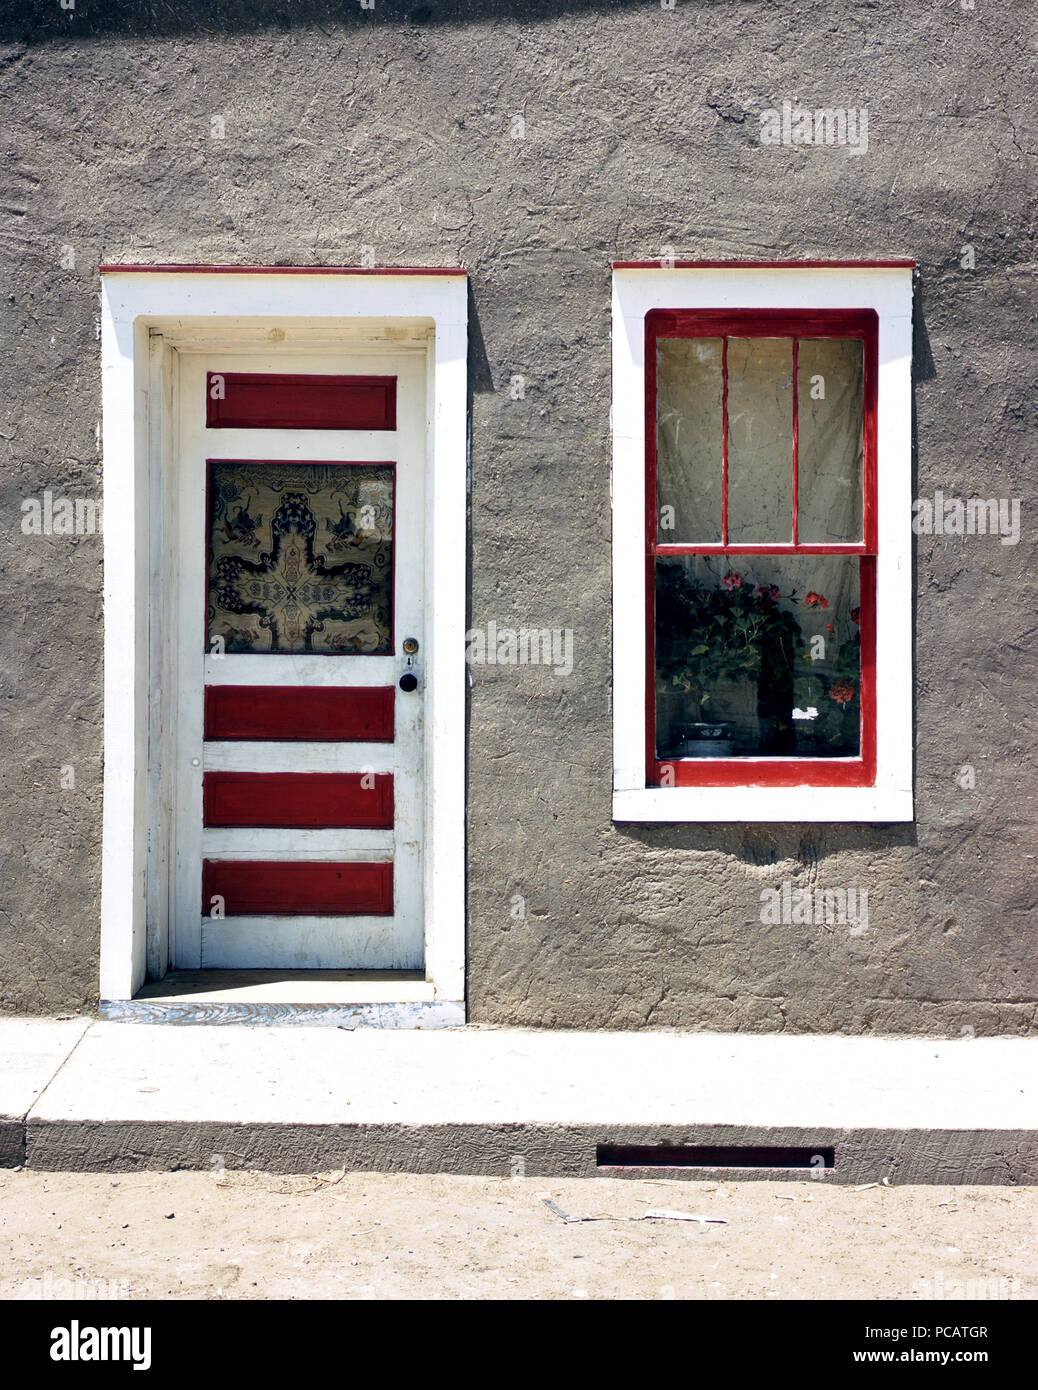 Porte et fenêtre dans une maison hispano-américaine, Noone, Nouveau Mexique Juillet 1940 Banque D'Images